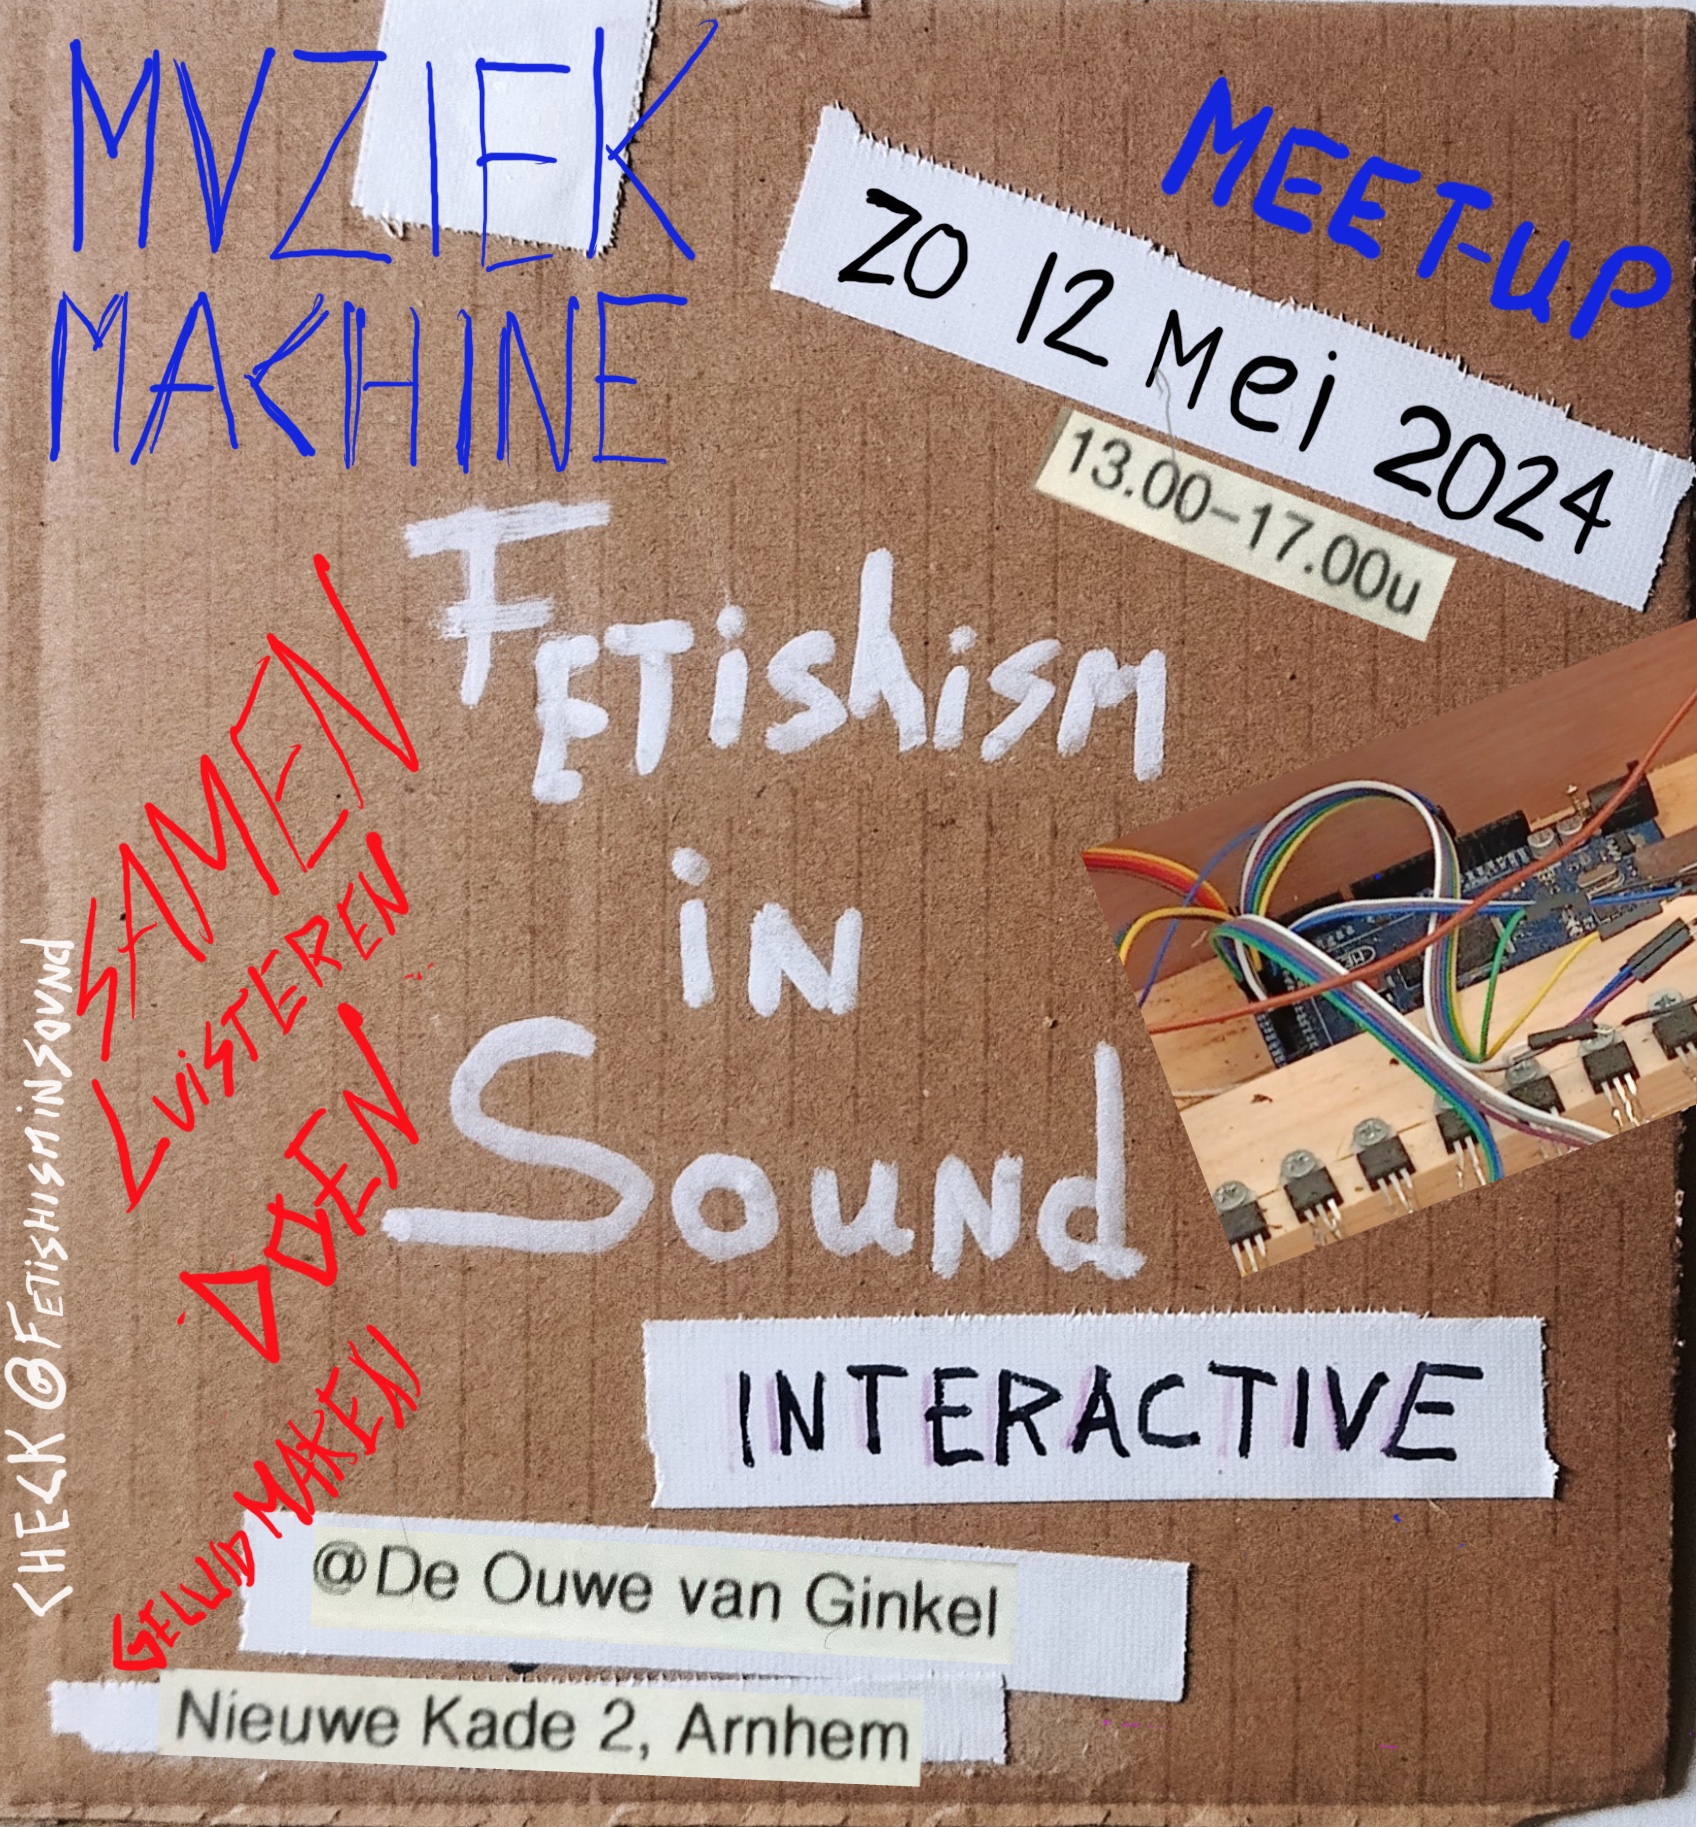 FLyer van de meet-up op 12 mei 2024 met thema Muziekmachine